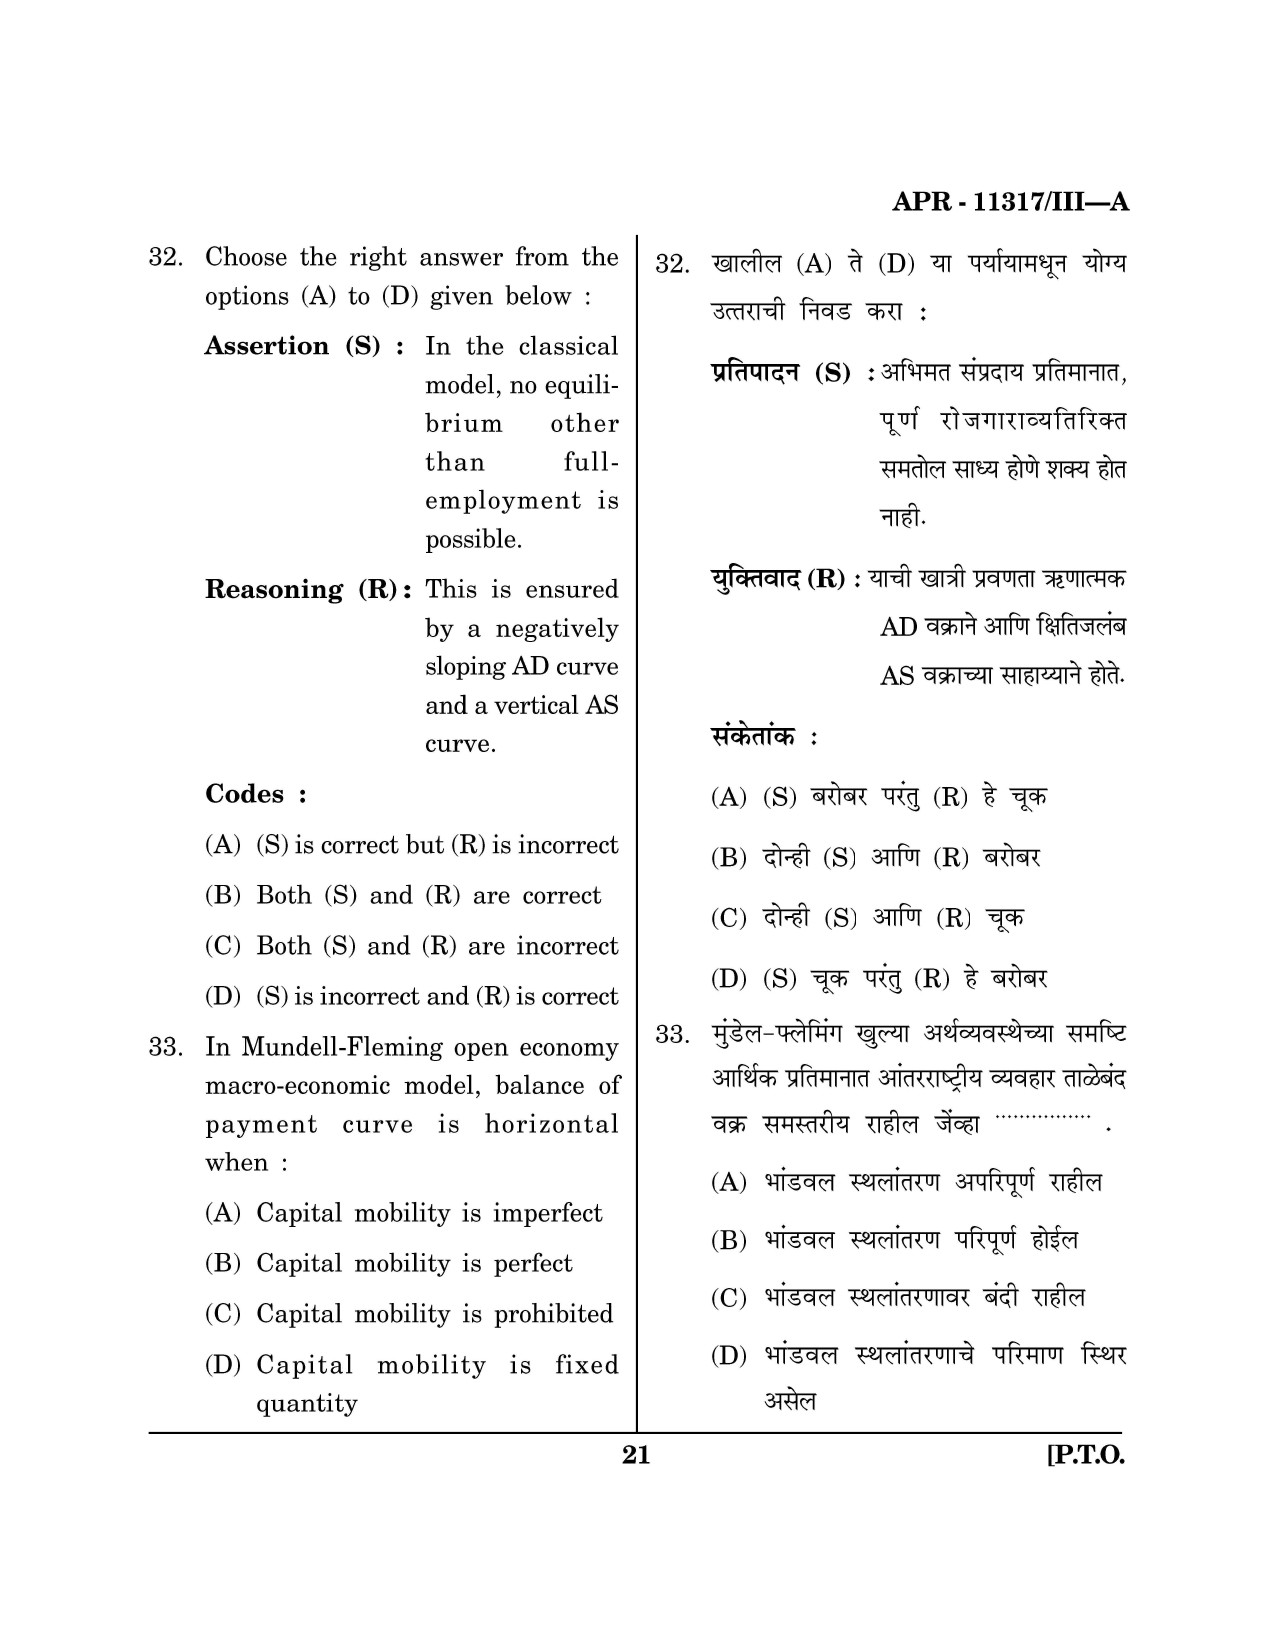 Maharashtra SET Economics Question Paper III April 2017 20